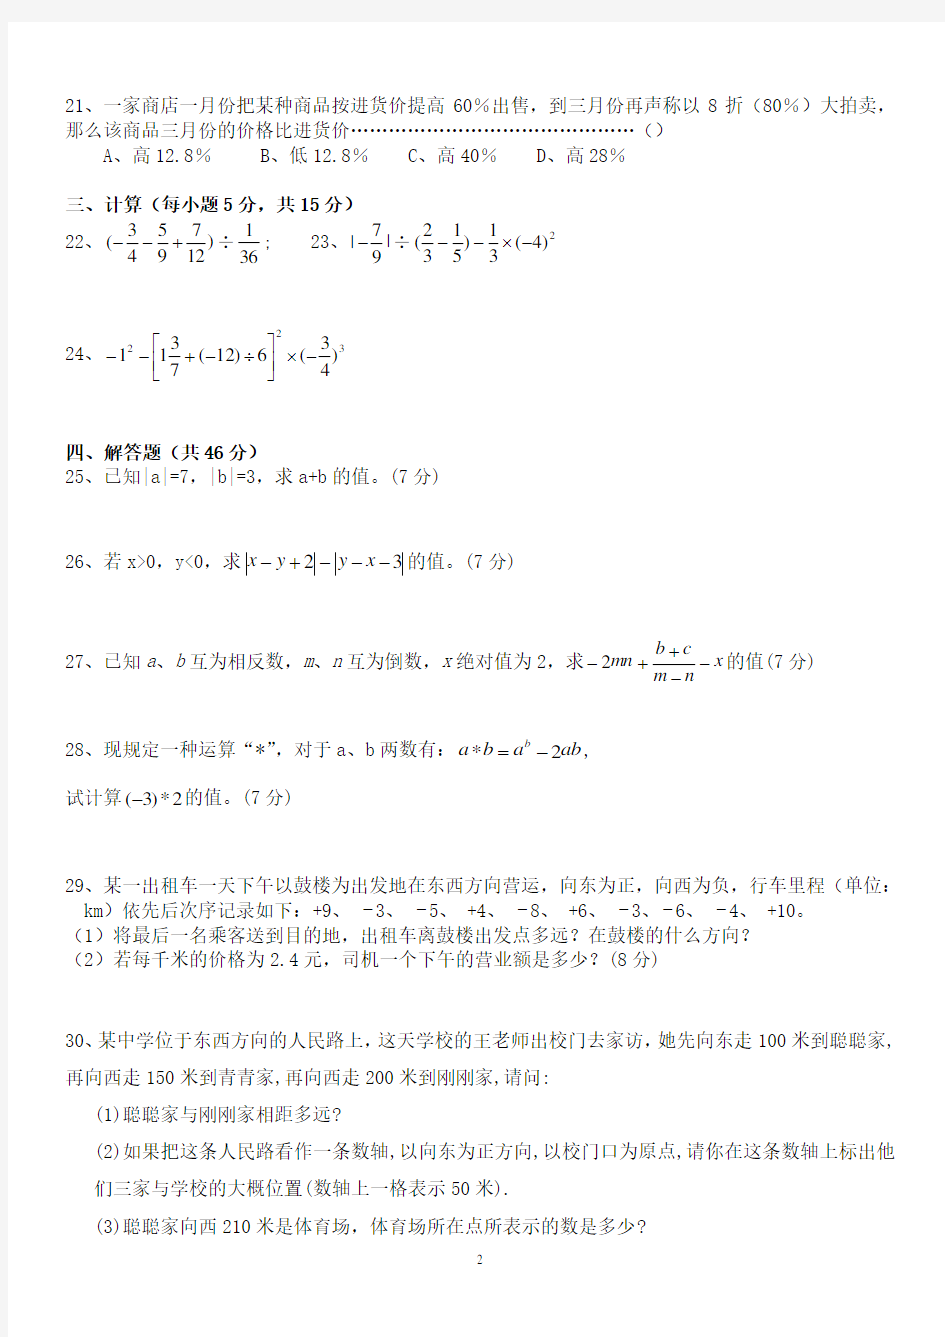 人教版初一数学七年级数学上册经典总复习练习题打印版.pdf